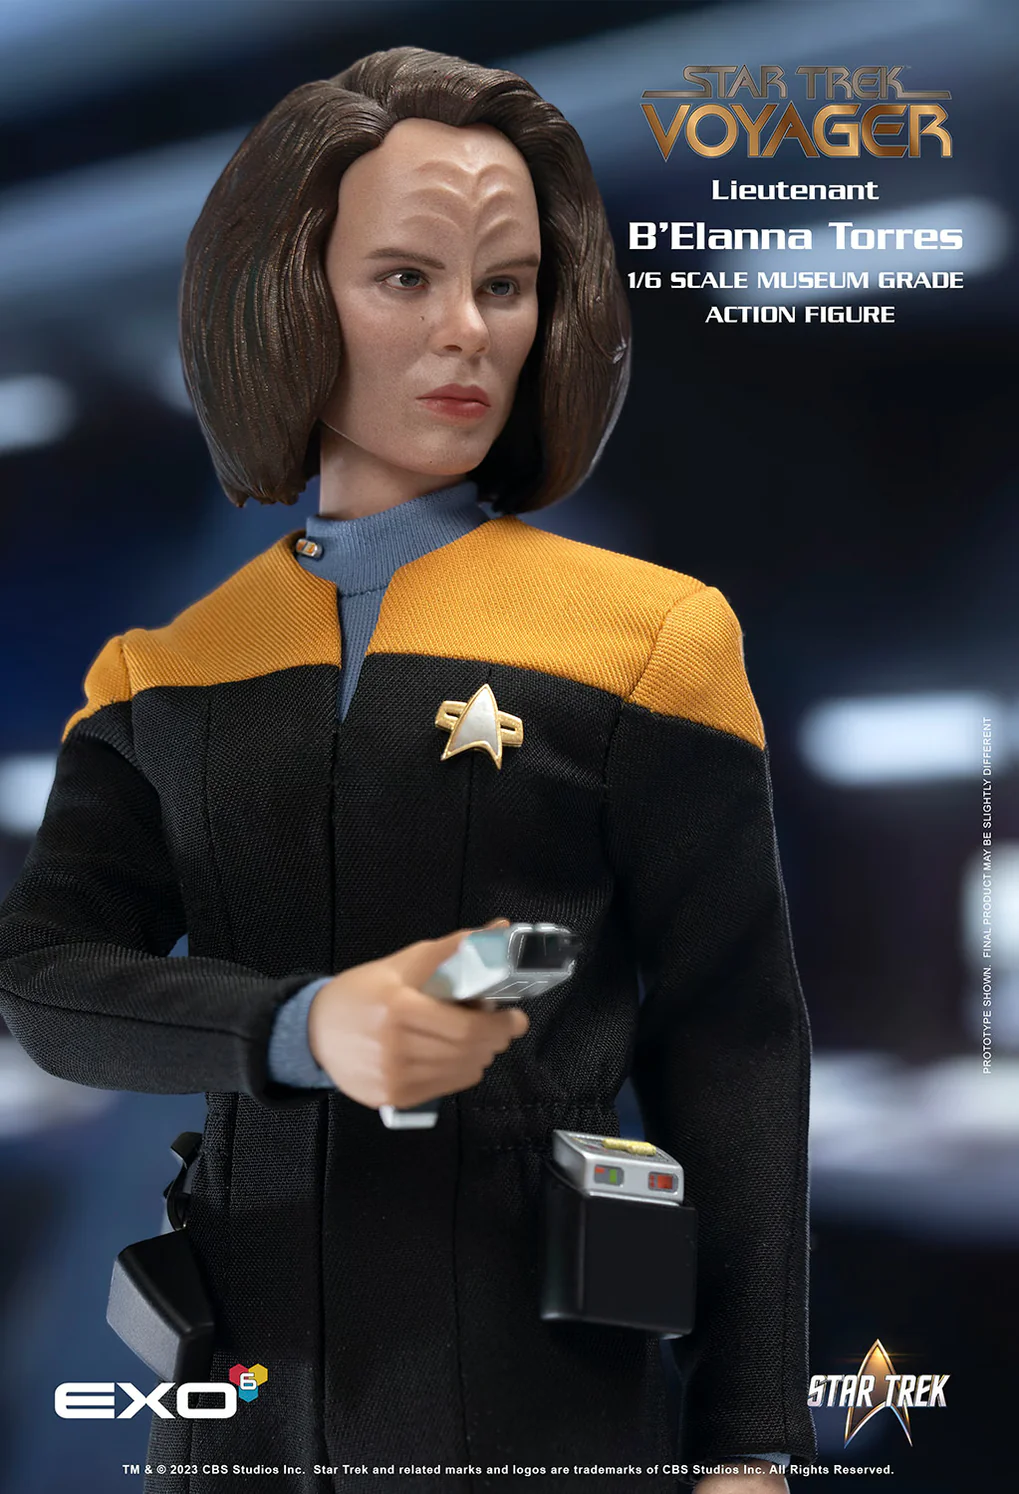 Star Trek Voyager Lieutenant B’Elanna Torres 1/6 Scale Collectible Figure